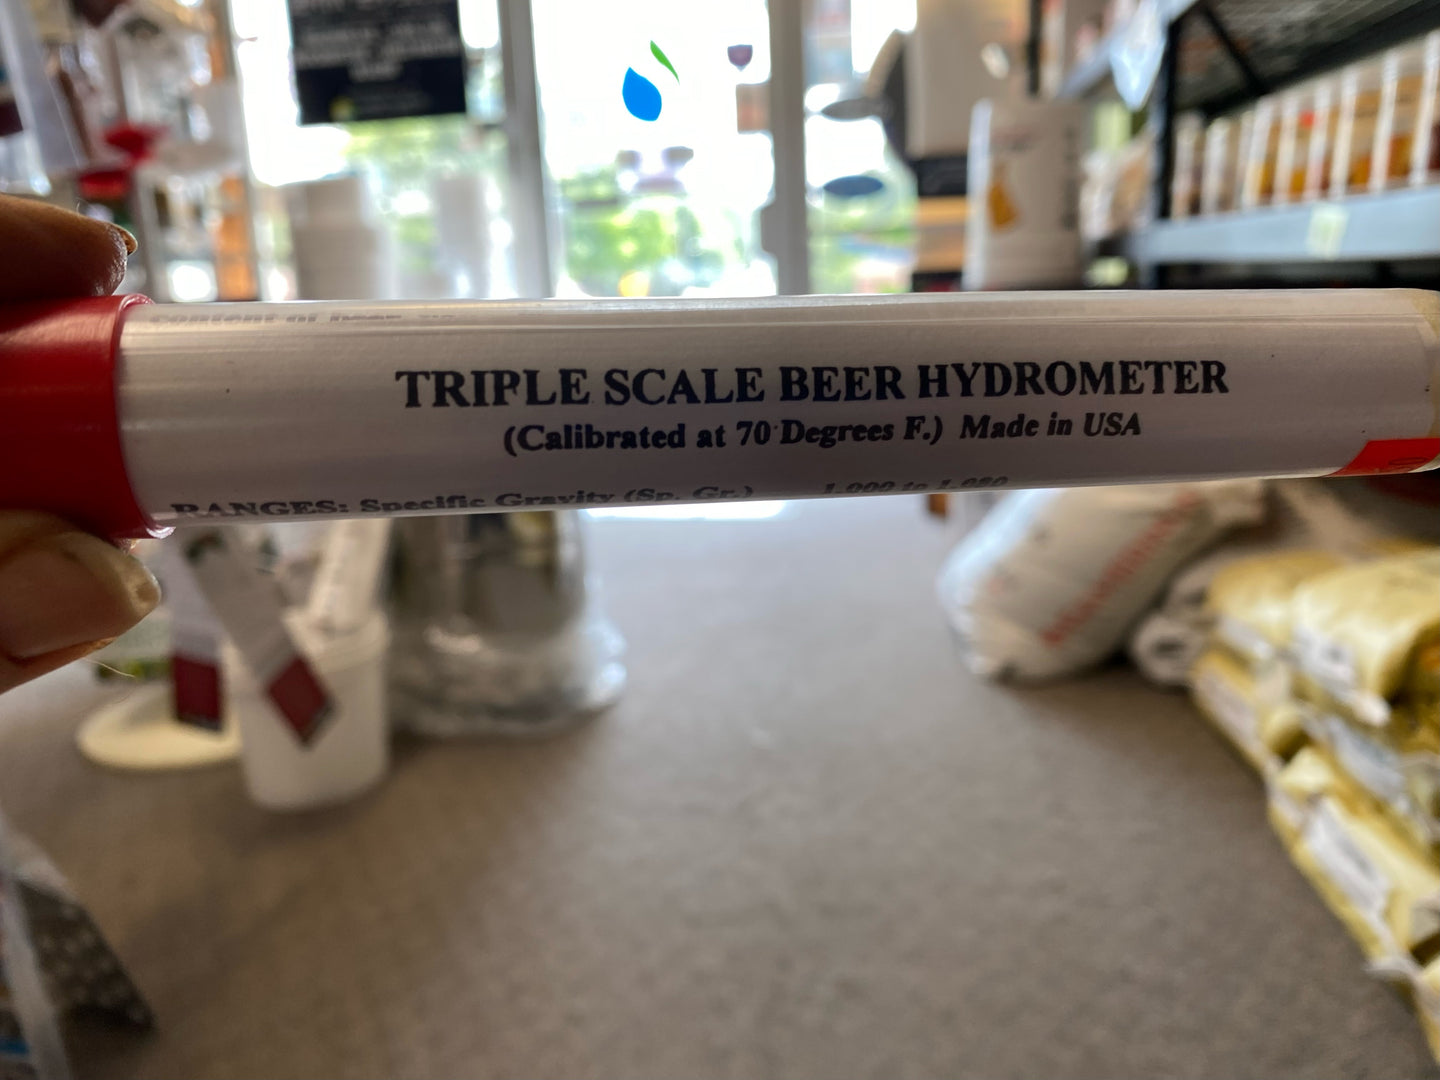 Triple scale BEER HYDROMETER